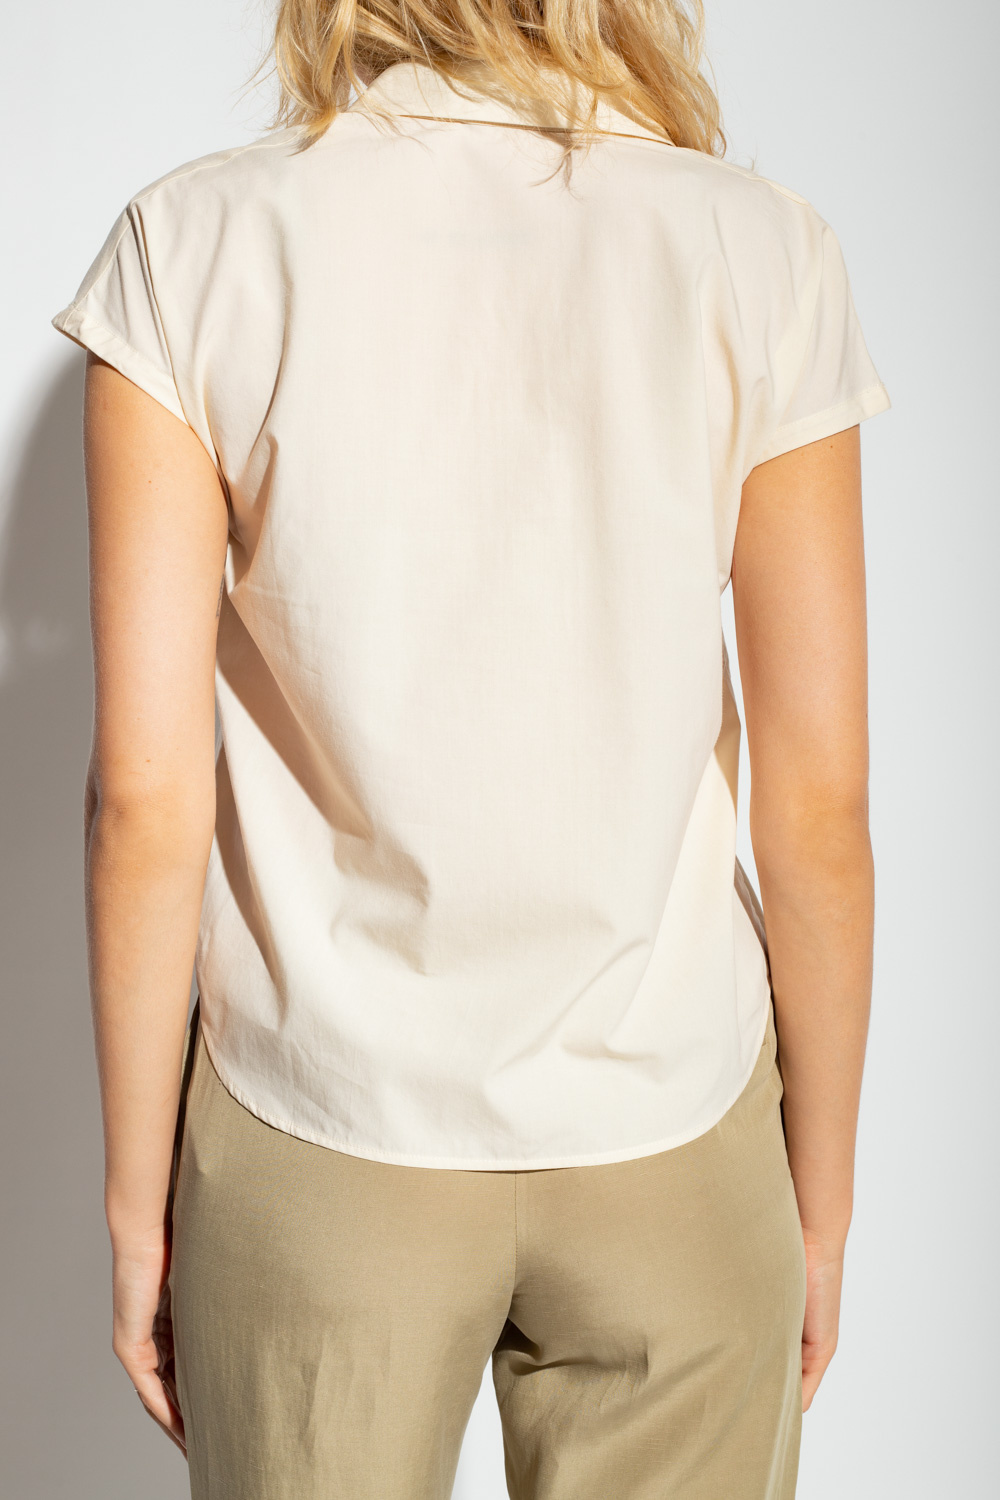 Samsøe Samsøe ‘Ylva’ shirt Infant with short sleeves